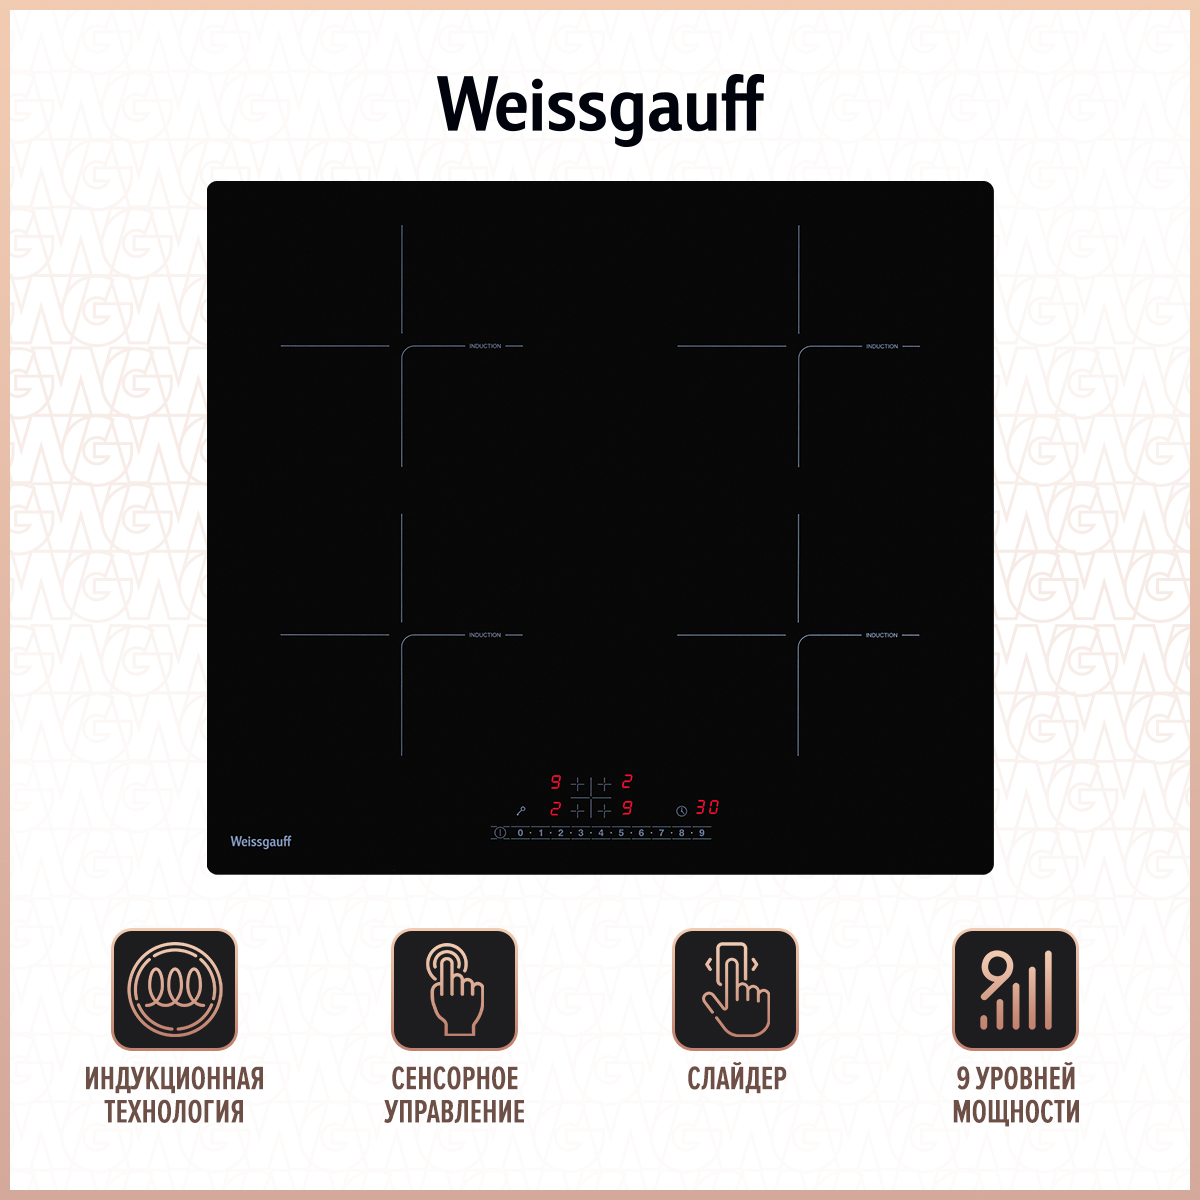 Встраиваемая варочная панель индукционная Weissgauff HI 632 BSC черный встраиваемая варочная панель индукционная weissgauff hi 643 bfzc